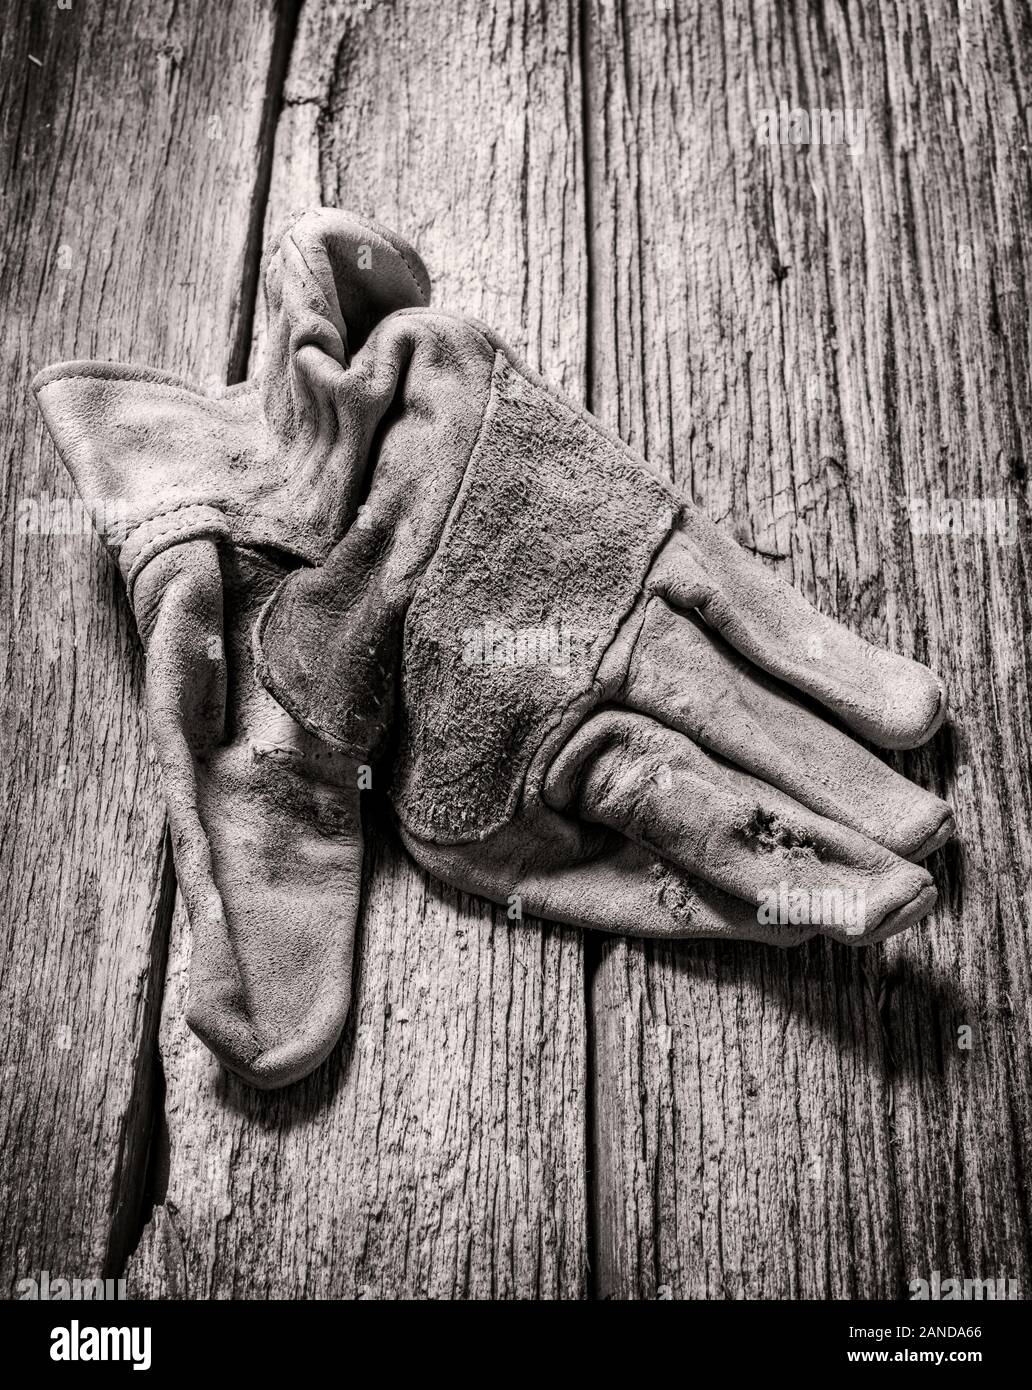 Black & White studio sigue de cerca la vida de los guantes de trabajo de cuero desgastado Foto de stock